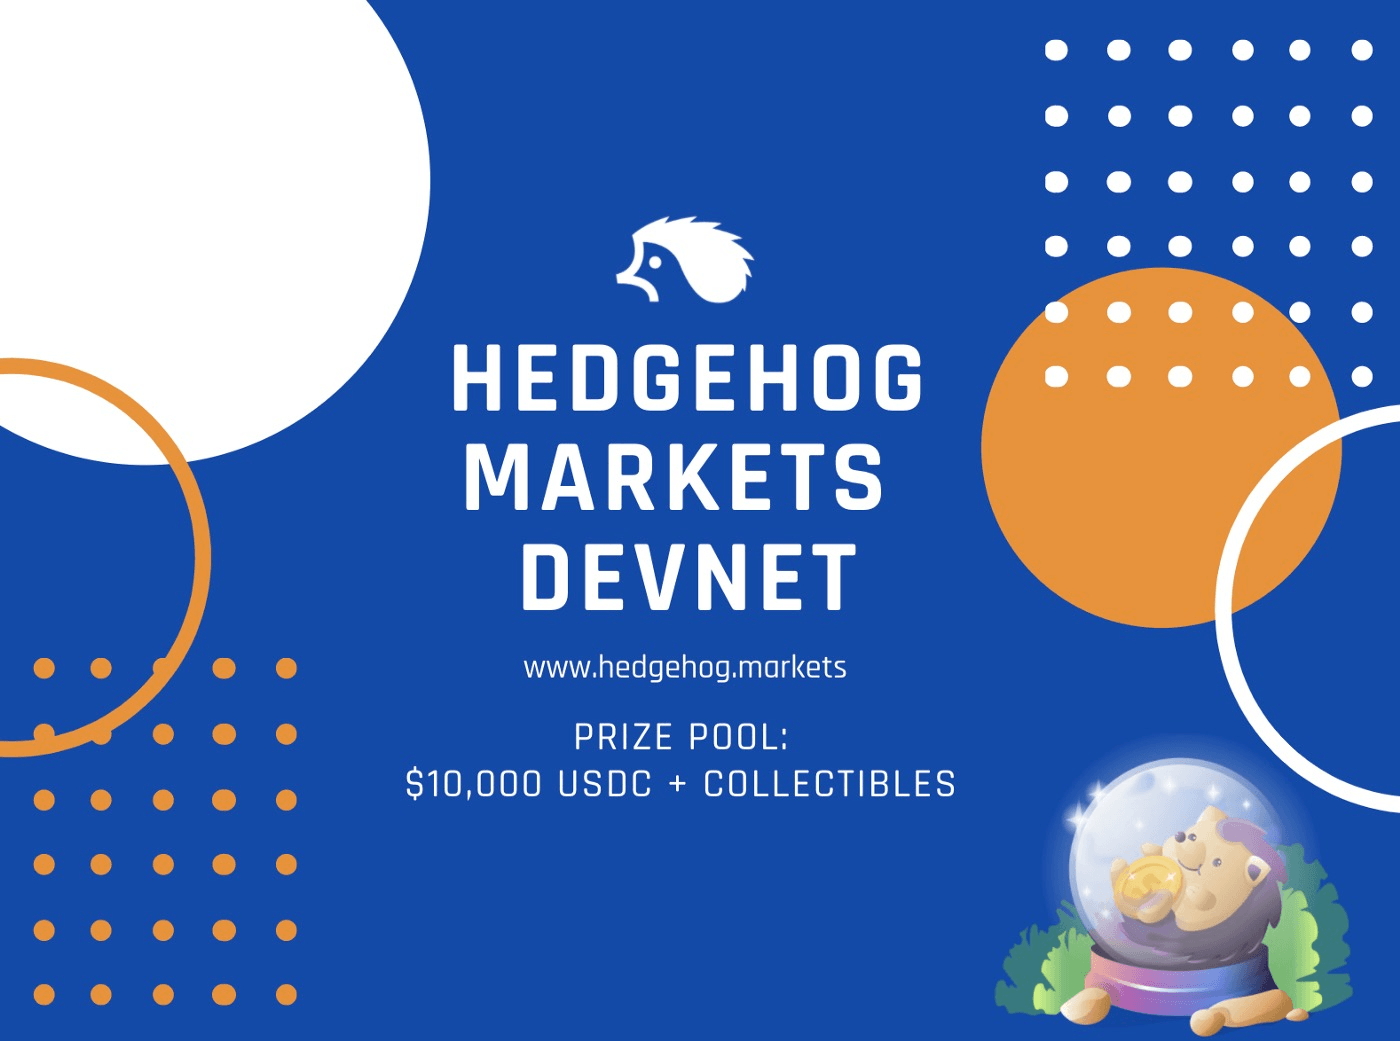 Hedgehog markets devnet